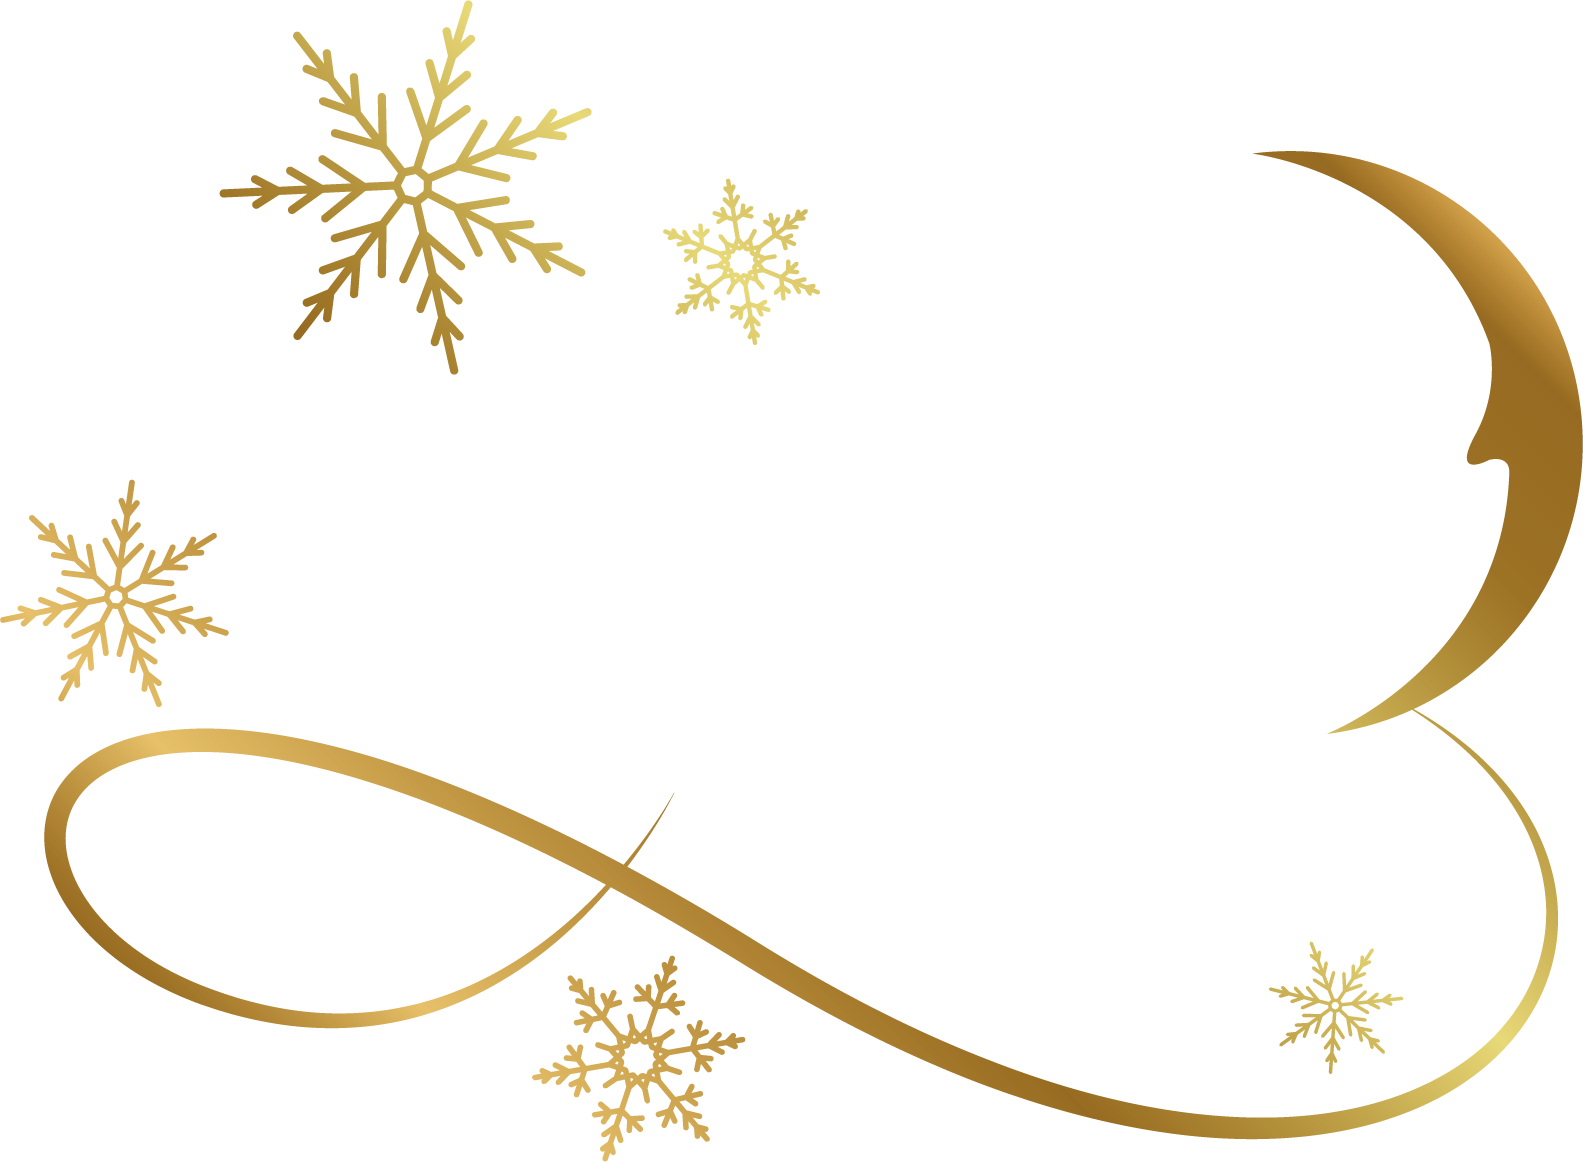 12 Nights of Wine